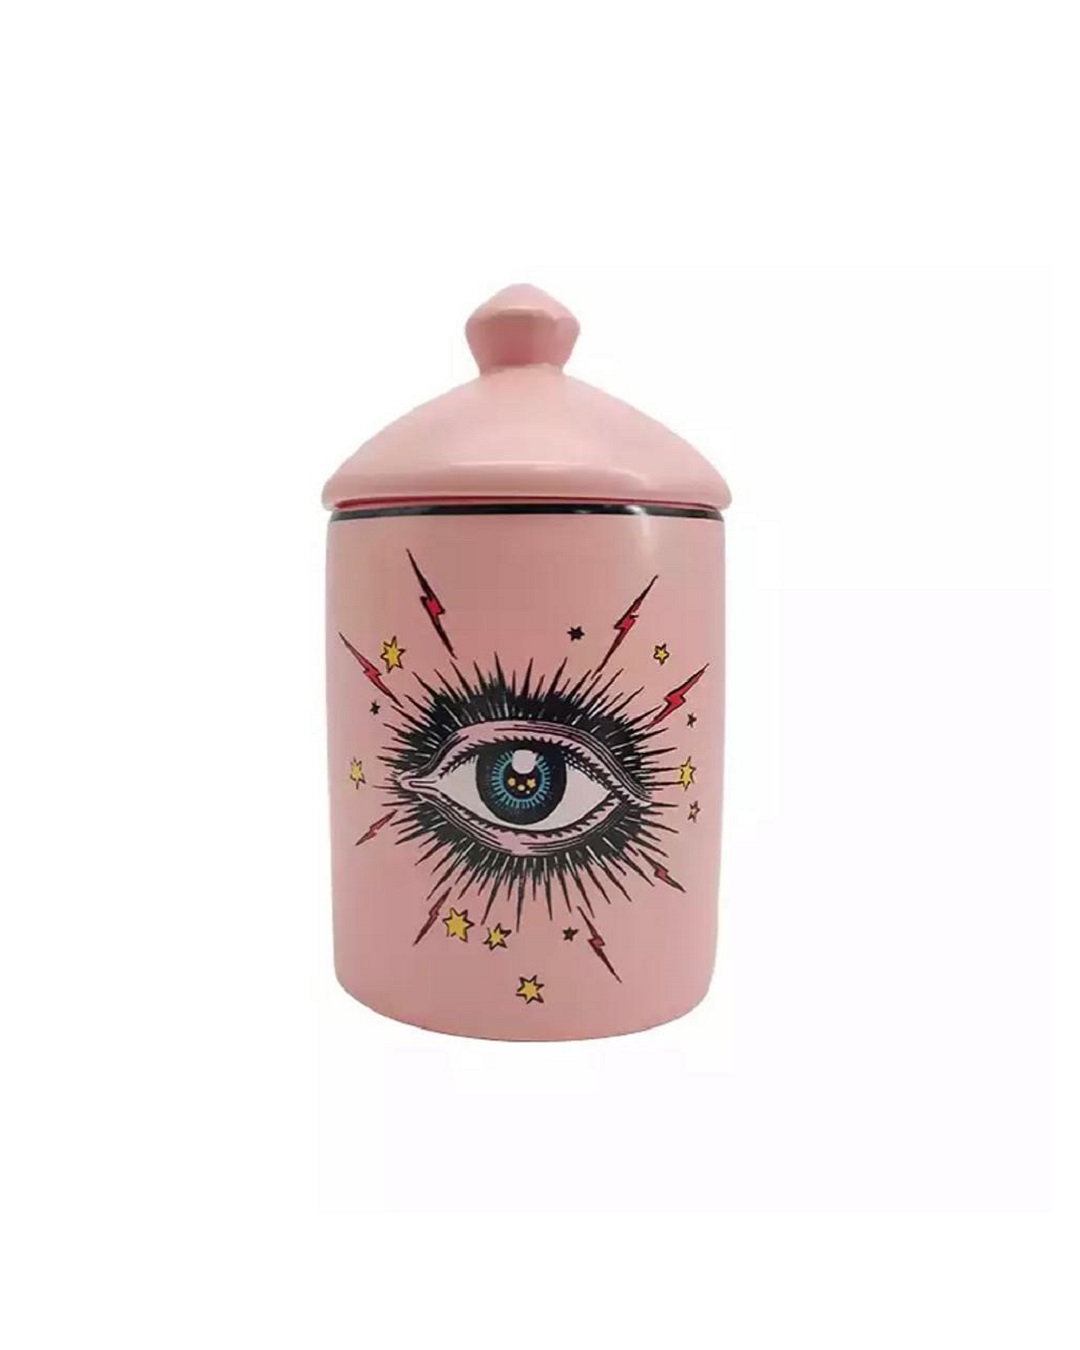 Pink eye jar